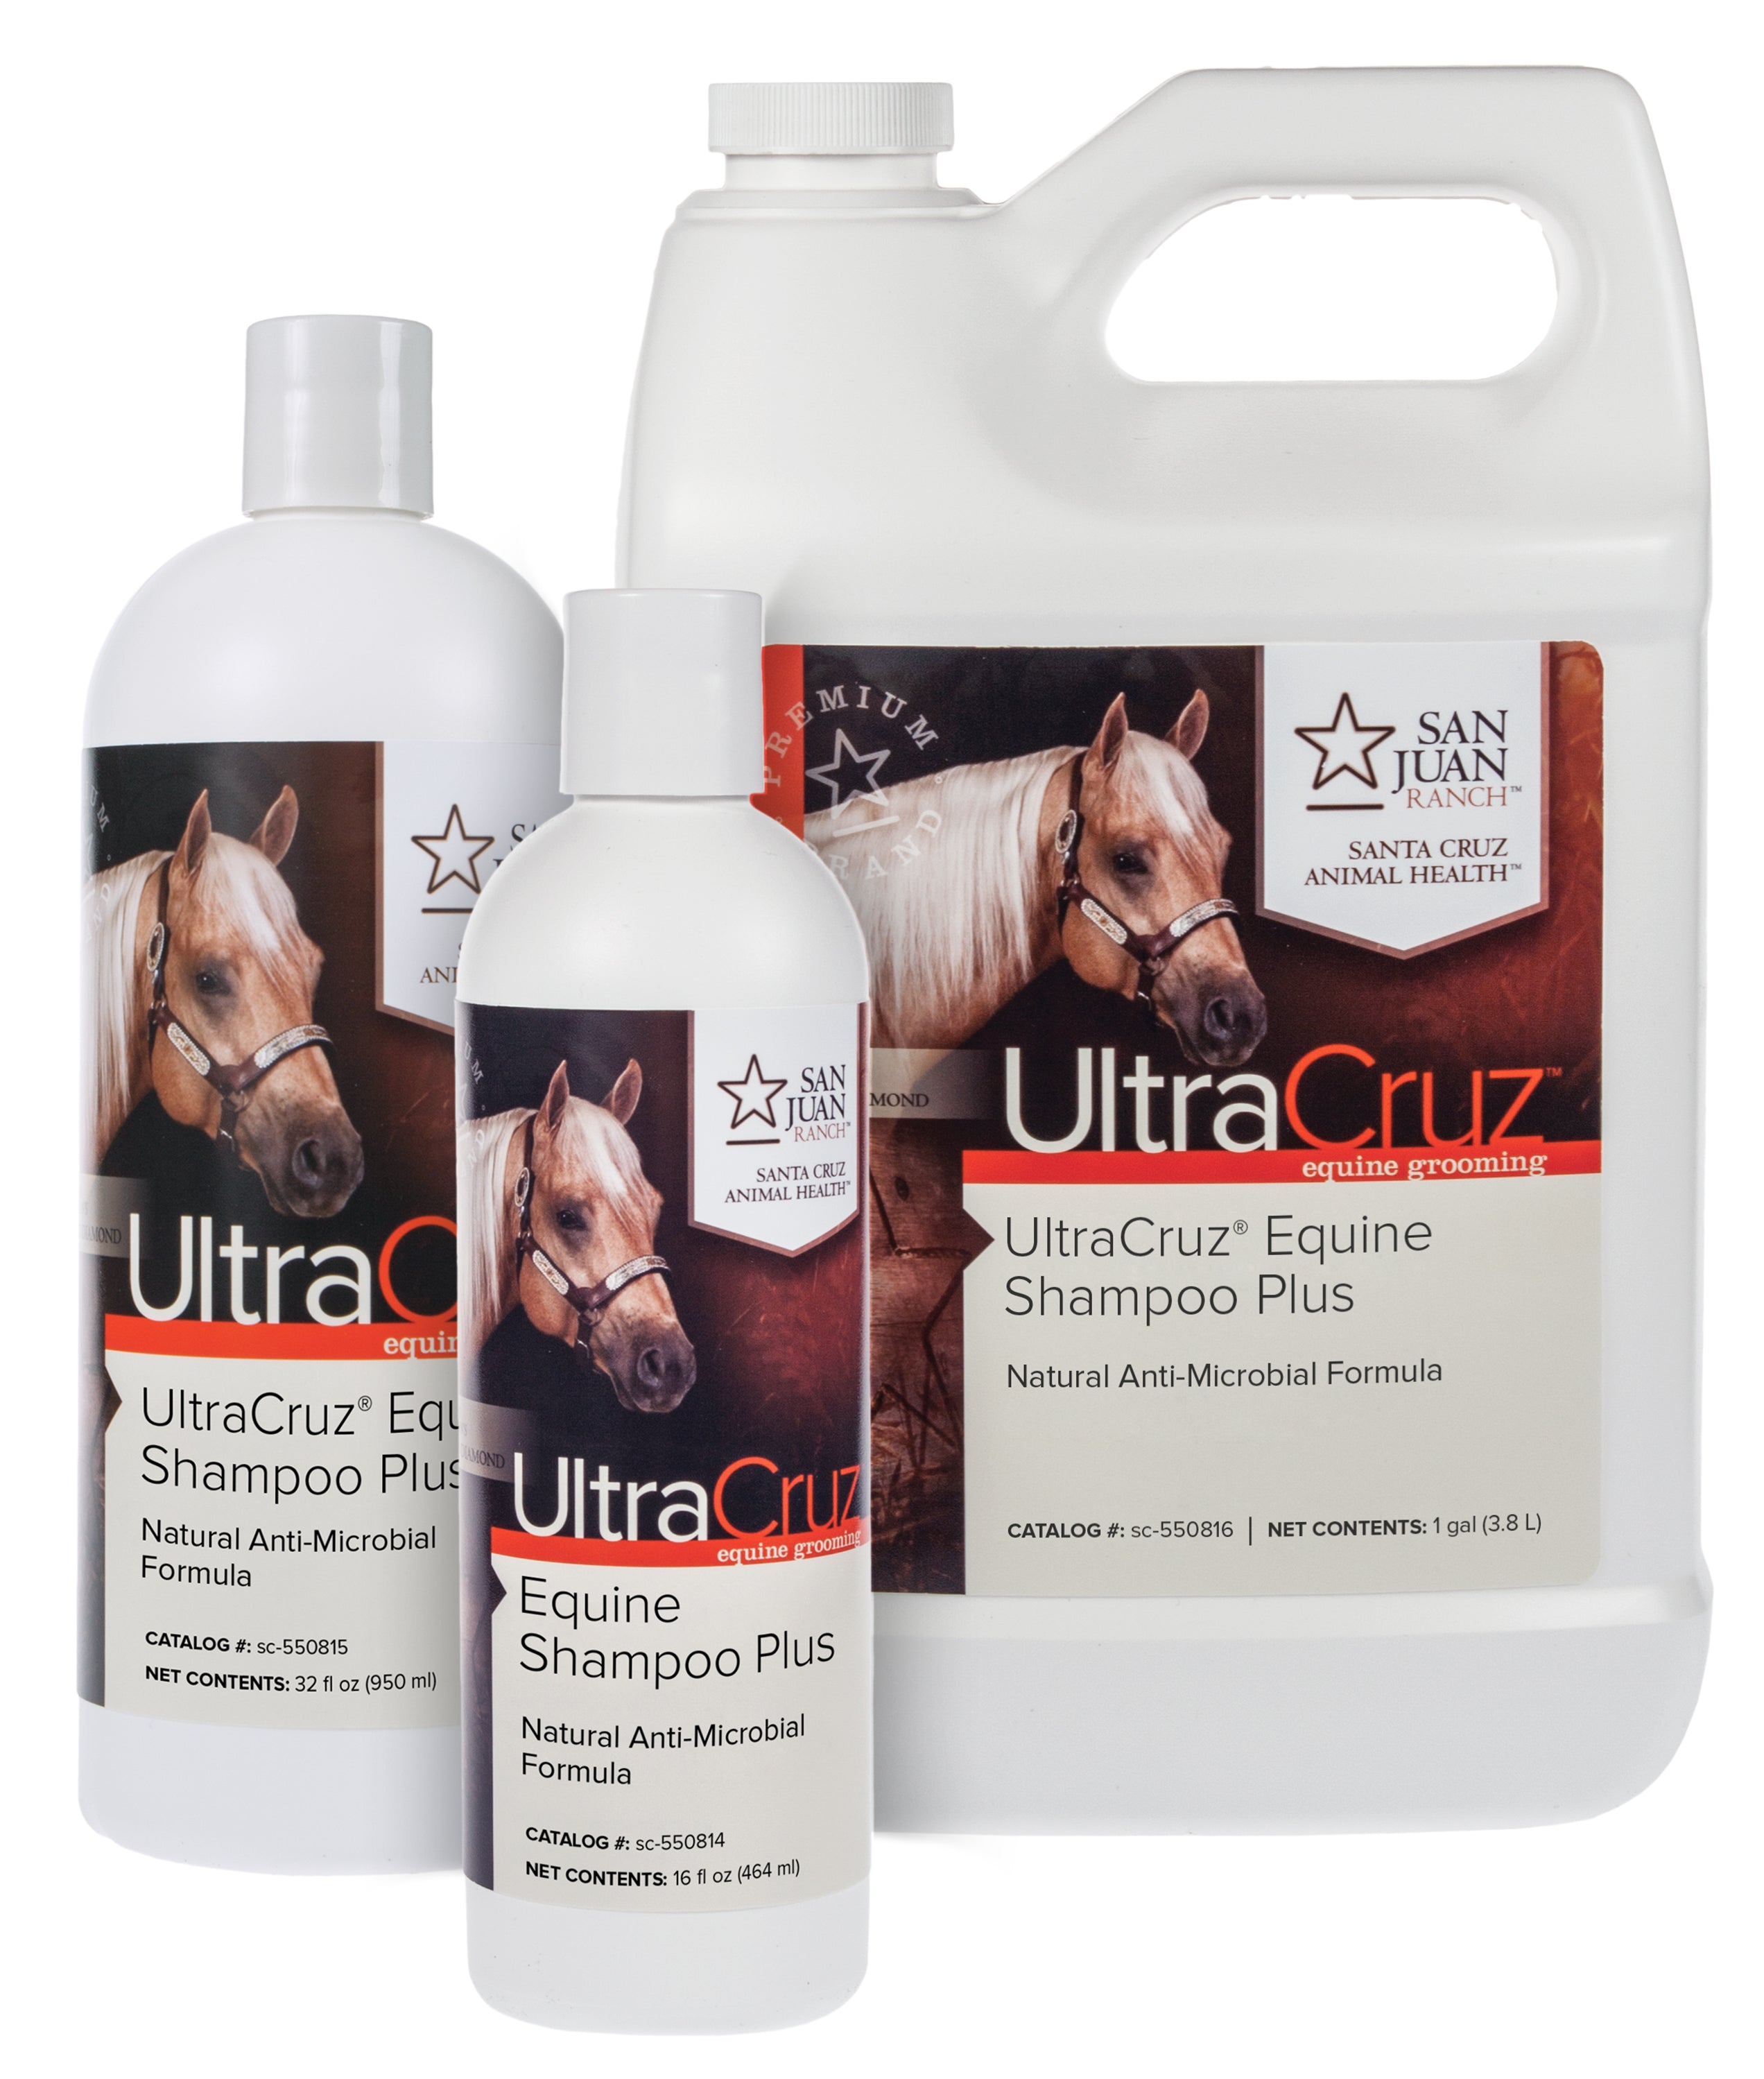 Ultra Cruz Equine Shampoo Plus